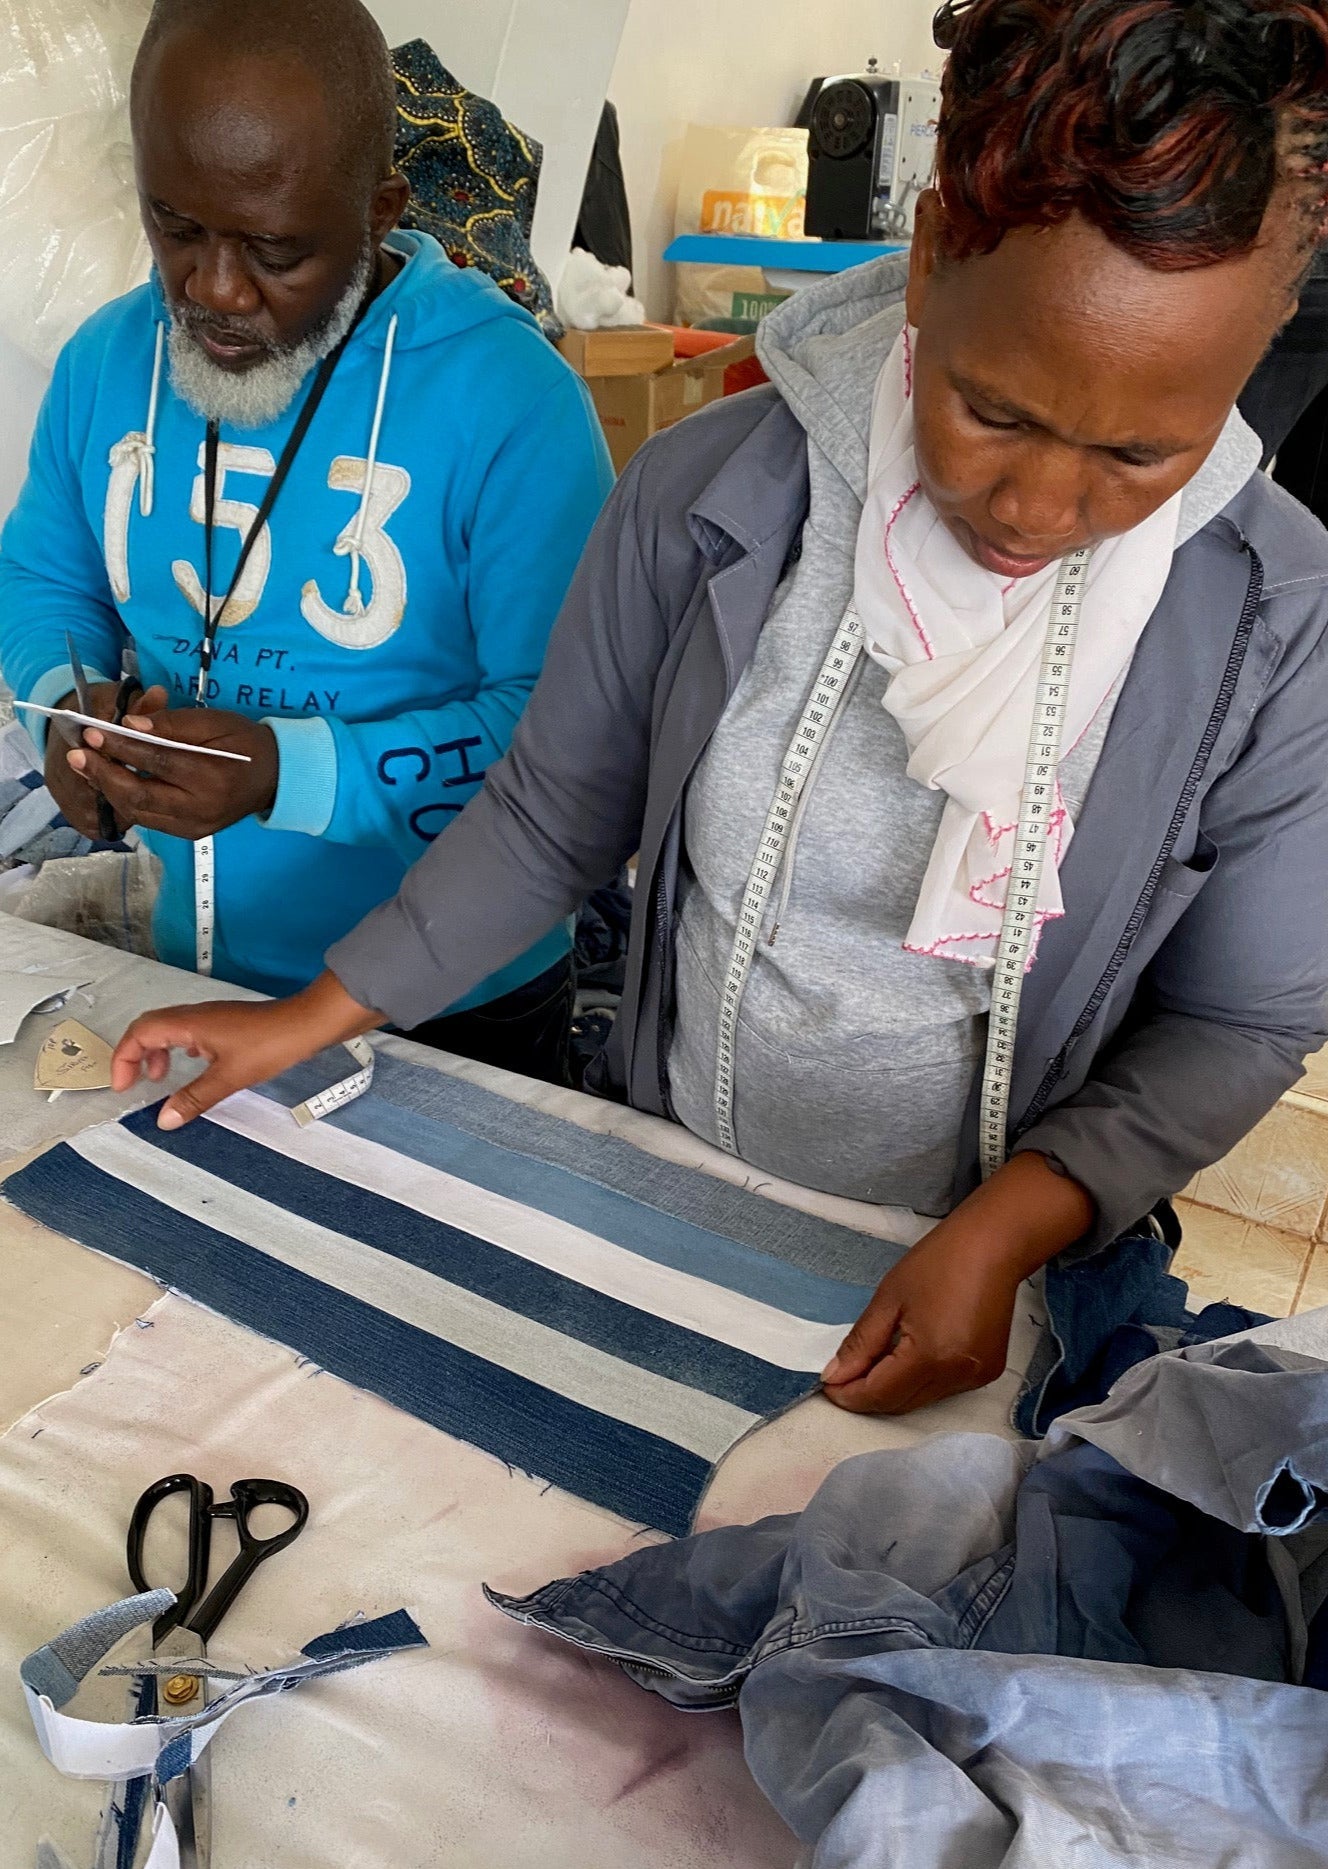 Tischdecken als Unterlage am Esstisch DENIM - mikono.africa Jacken aus Kenia bunte Bomberjacke Partyjacke faire sozial nachhaltig designed in Kenia